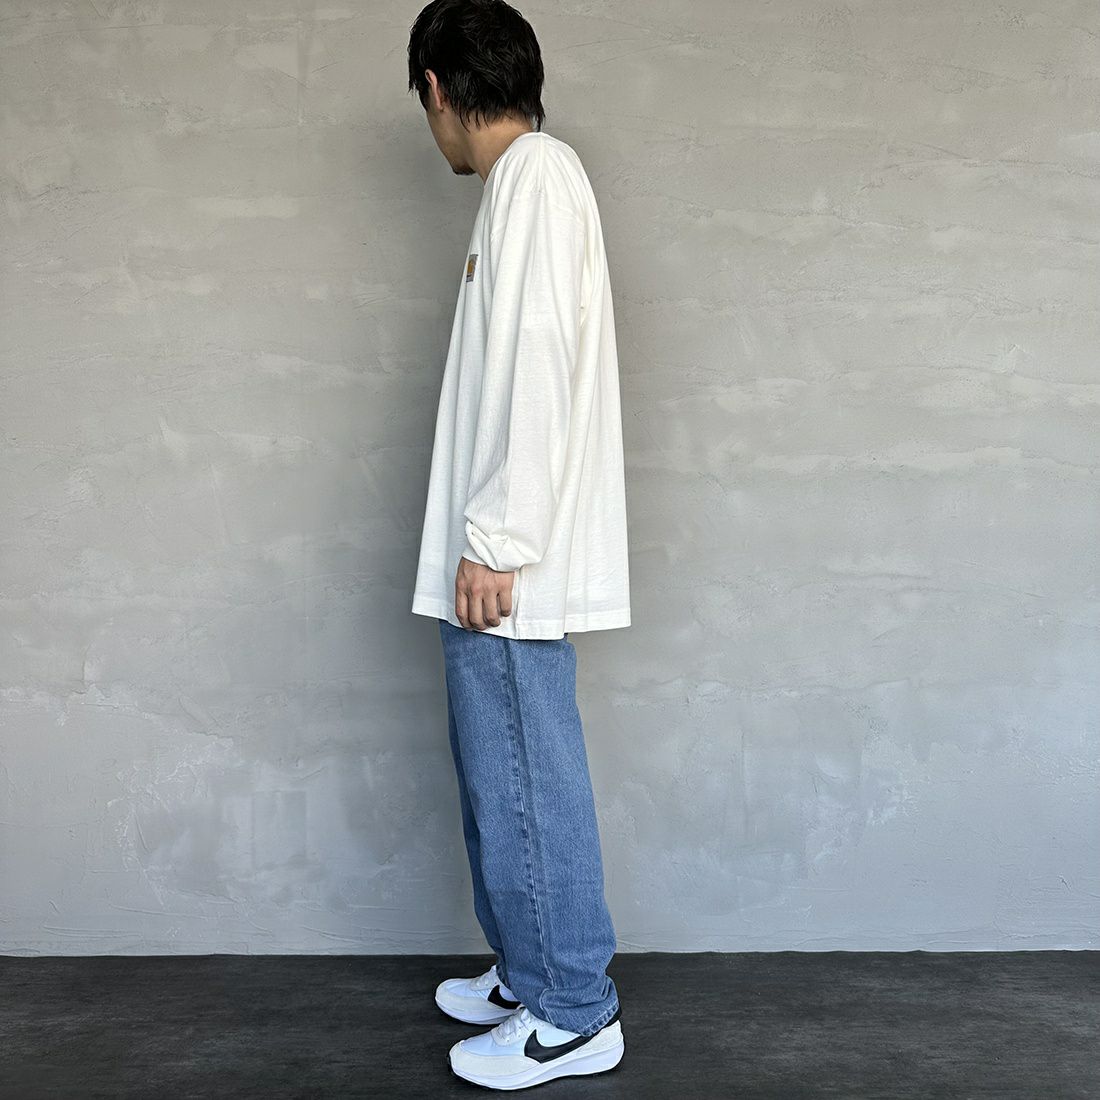 carhartt WIP [カーハートダブリューアイピー] ロングスリーブネルソンTシャツ [I029948] WAX &&モデル身長：173cm 着用サイズ：L&&